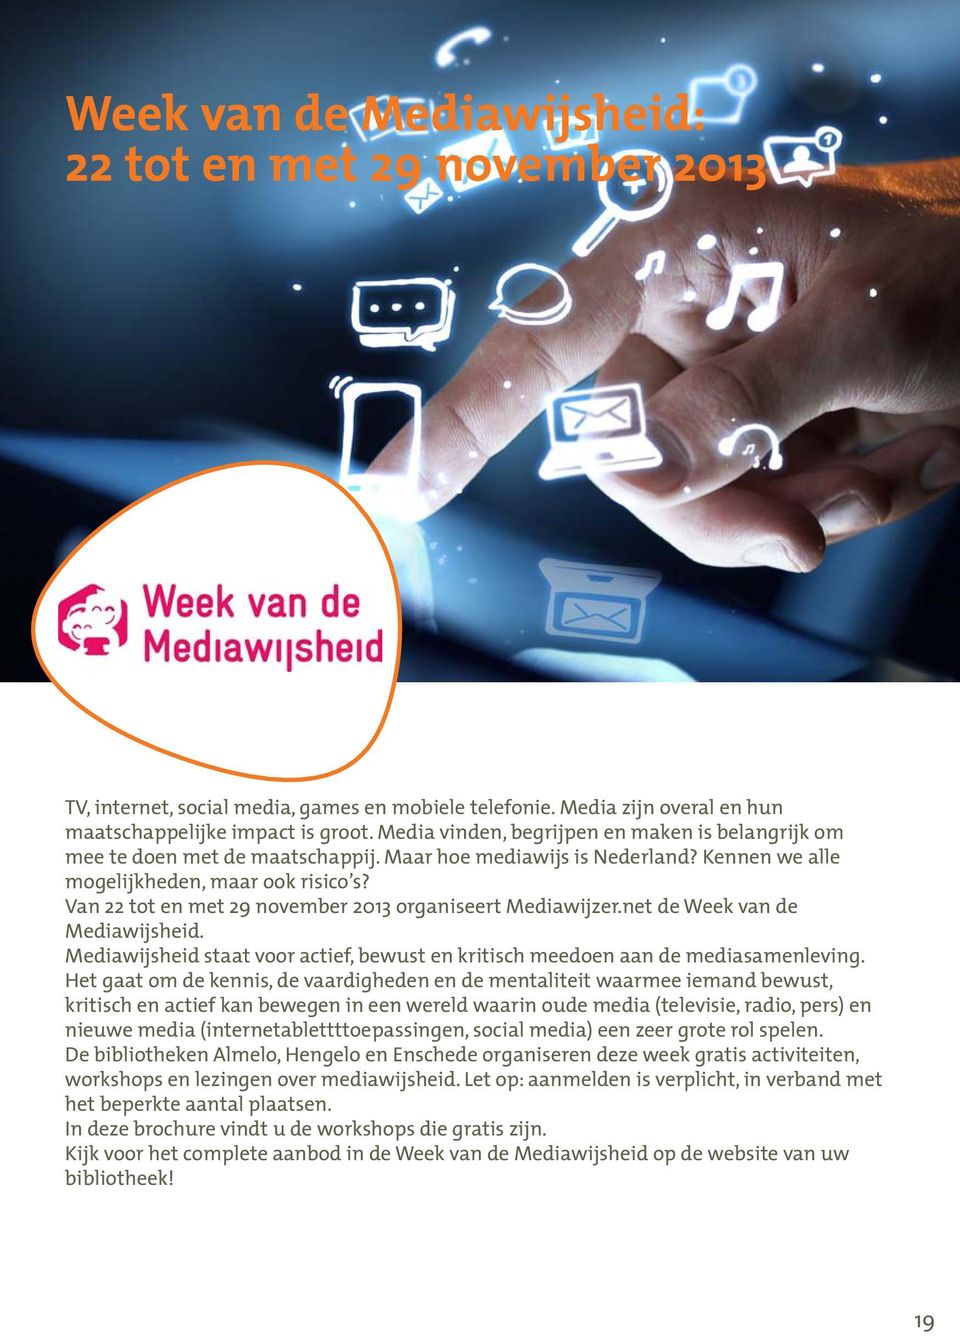 Van 22 tot en met 29 november 2013 organiseert Mediawijzer.net de Week van de Mediawijsheid. Mediawijsheid staat voor actief, bewust en kritisch meedoen aan de mediasamenleving.